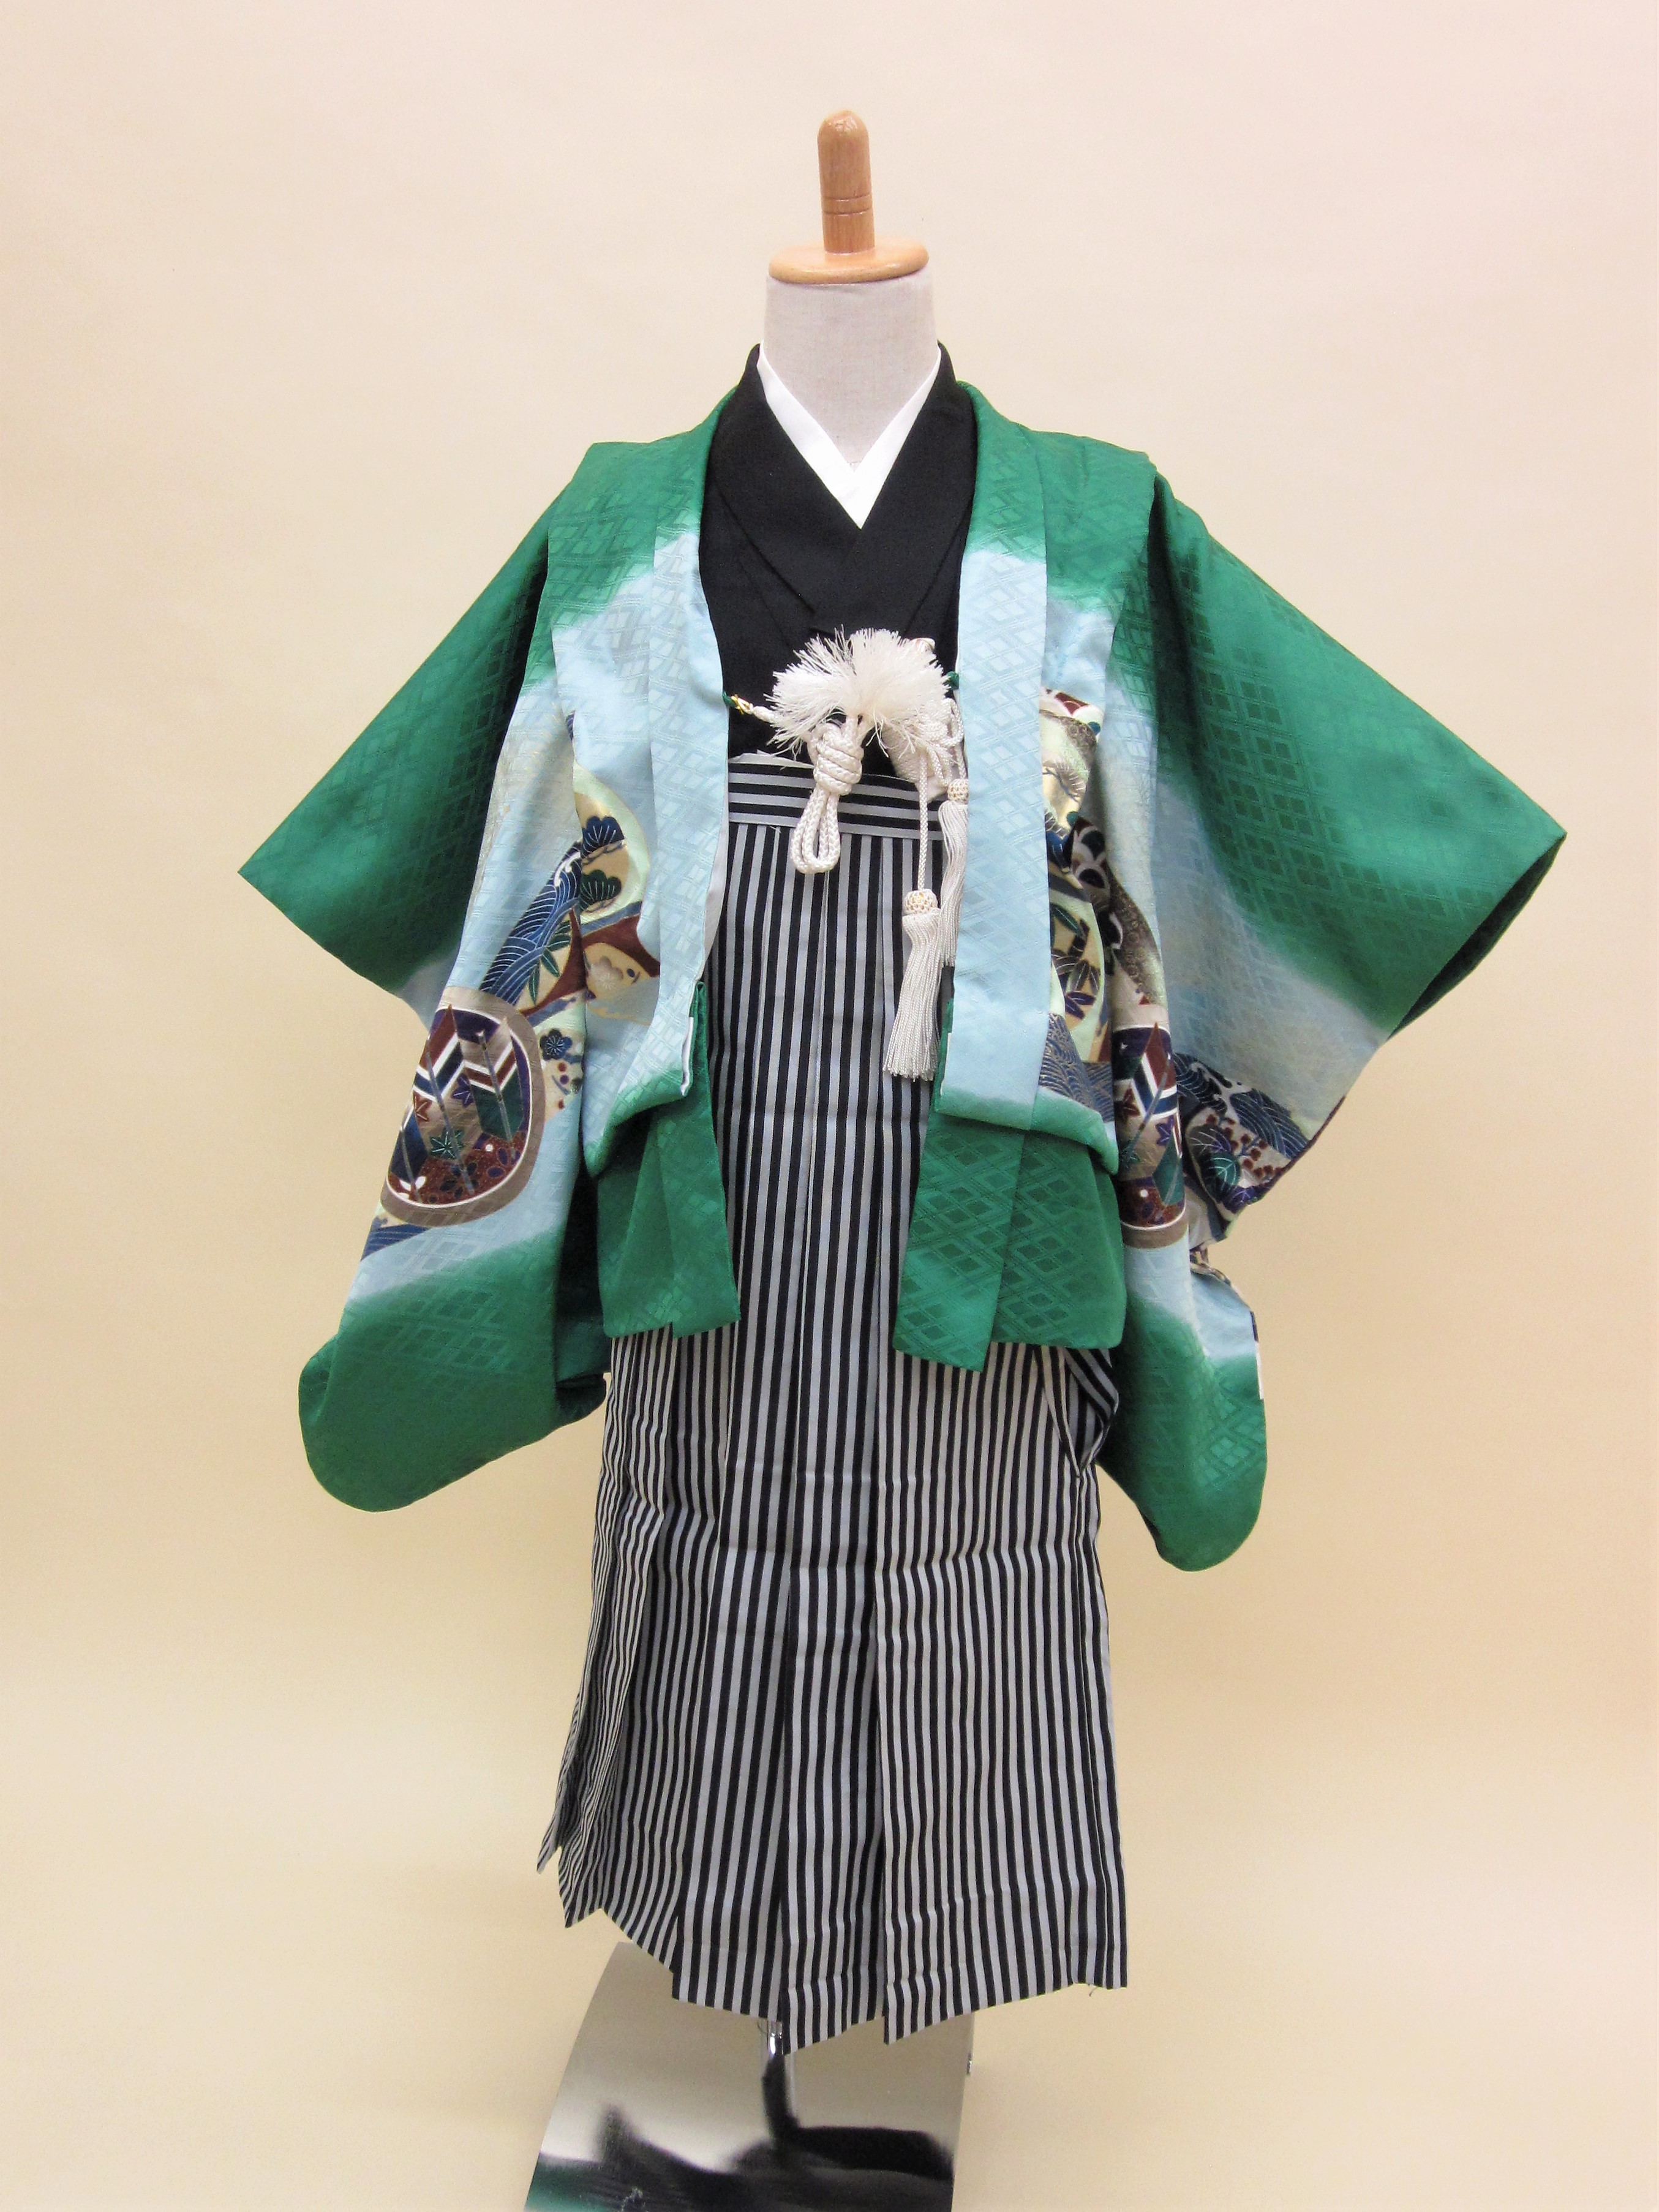 5歳男児 羽織袴フルセット「緑地羽織袴」